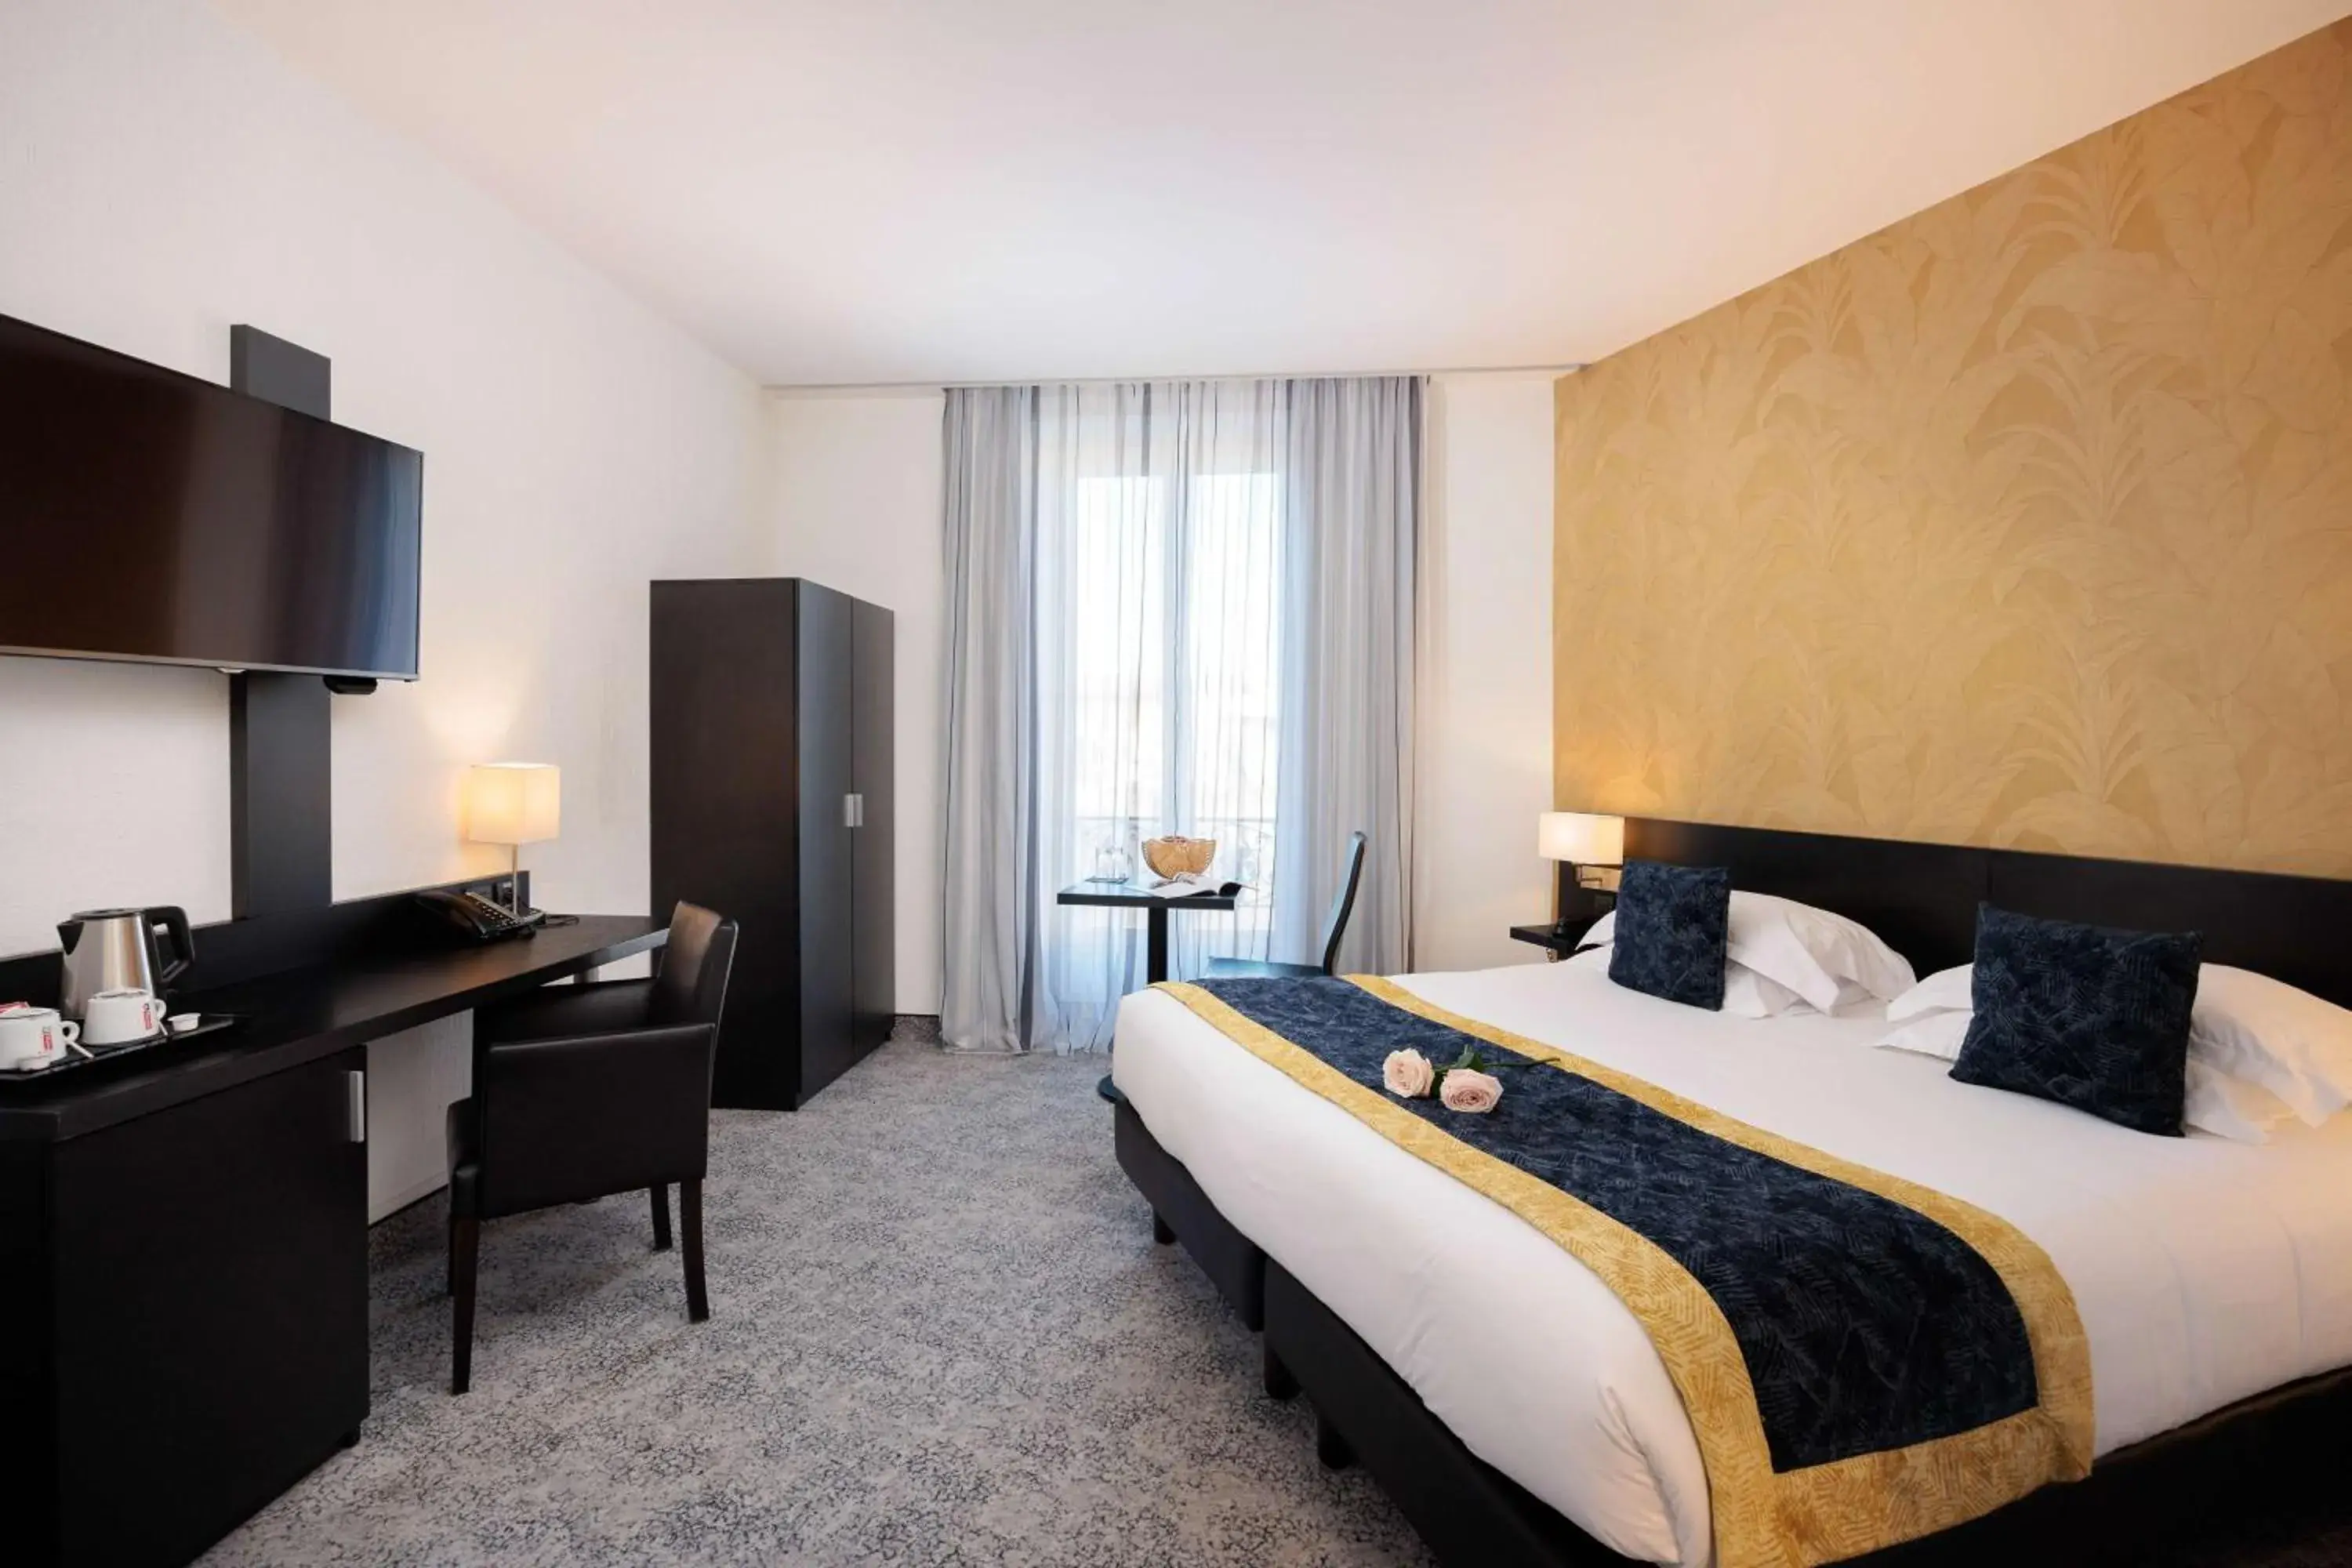 Bedroom, Bed in Best Western Plus Hôtel Massena Nice